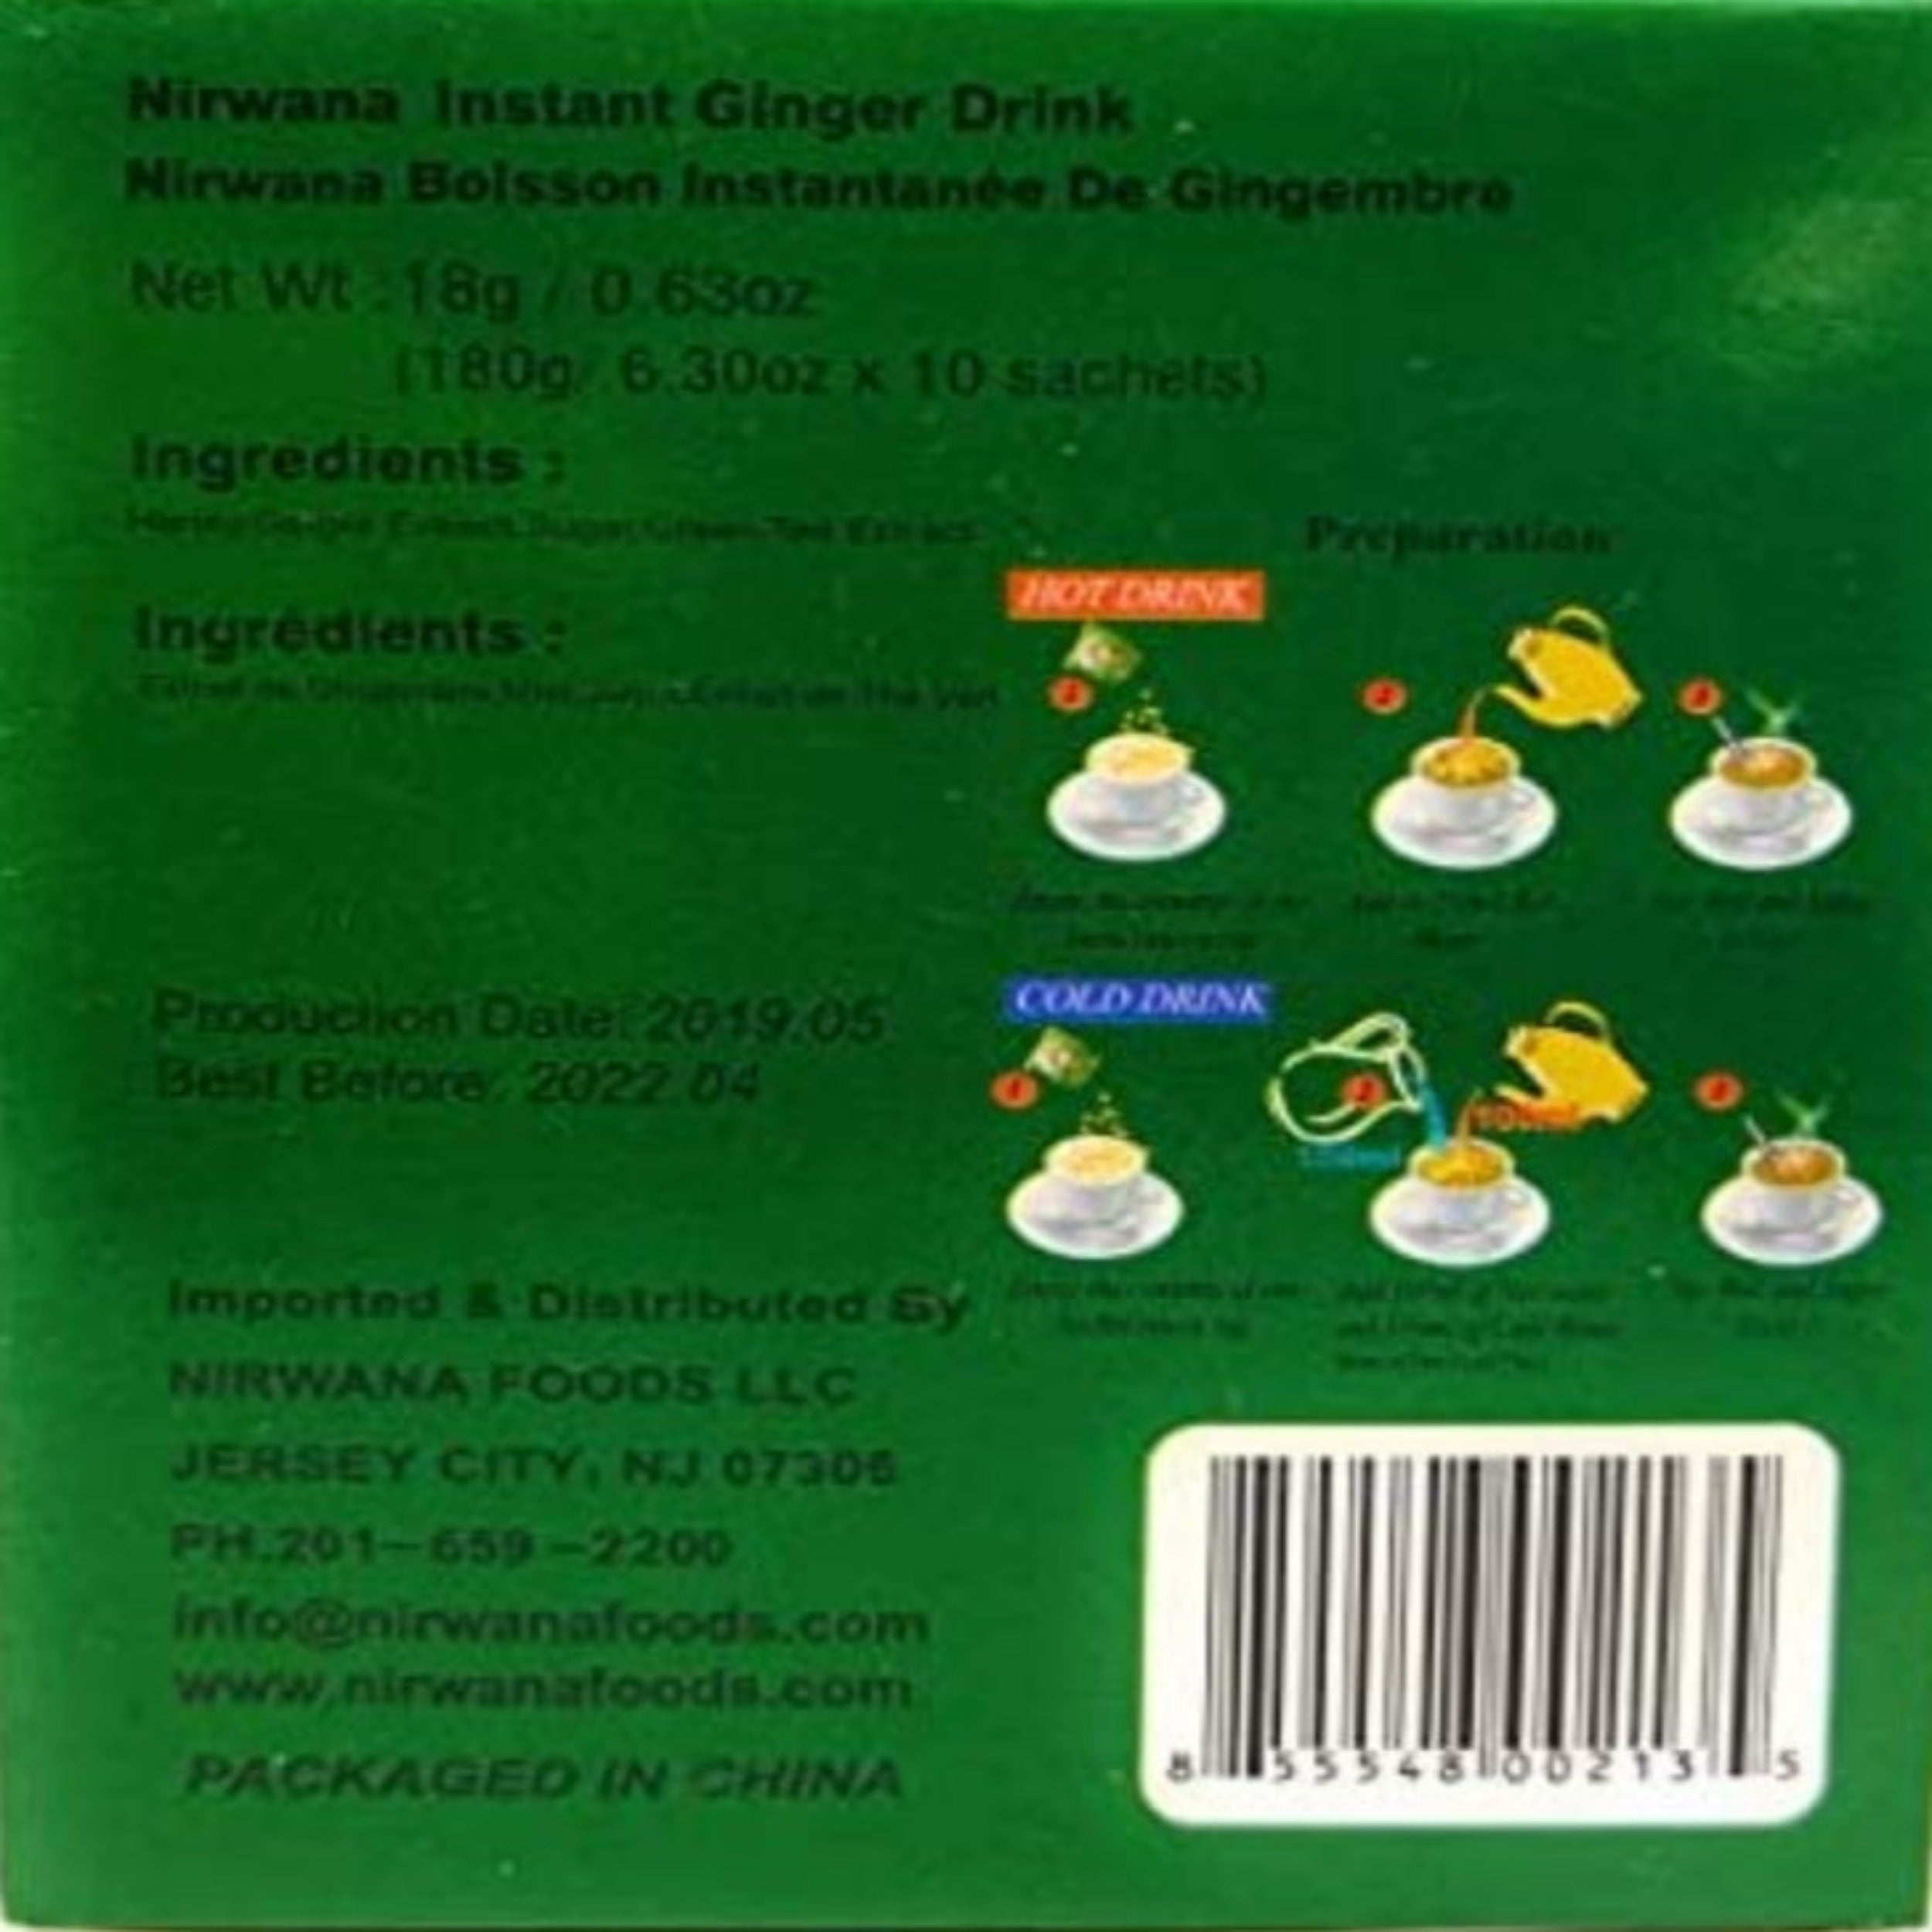 Nirwana Honey Ginger Tea